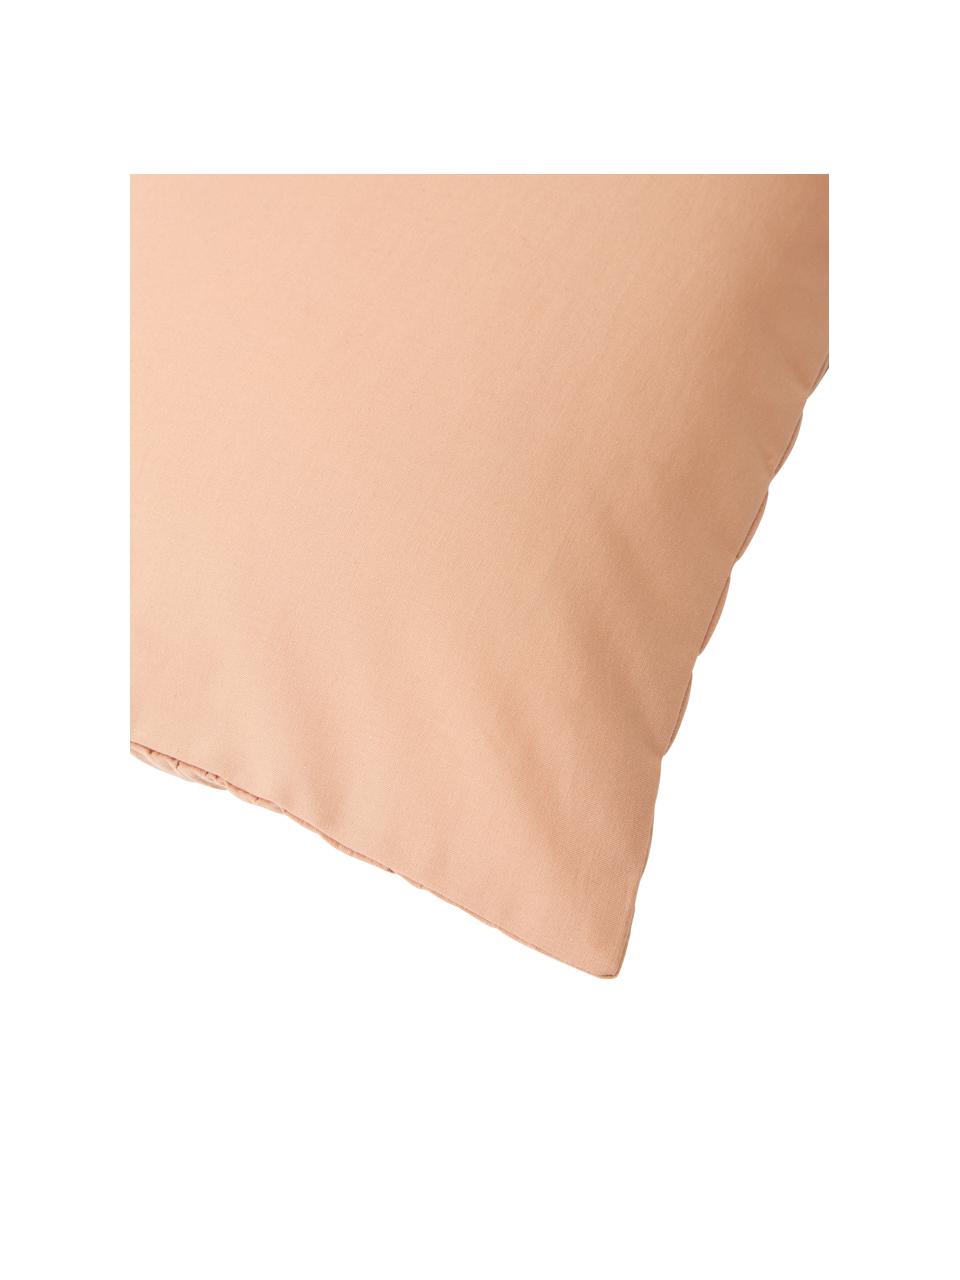 Fundas de almohada de algodón Esme, 2 uds., Reverso: tejido renforcé Densidad , Terracota, An 50 x L 70 cm